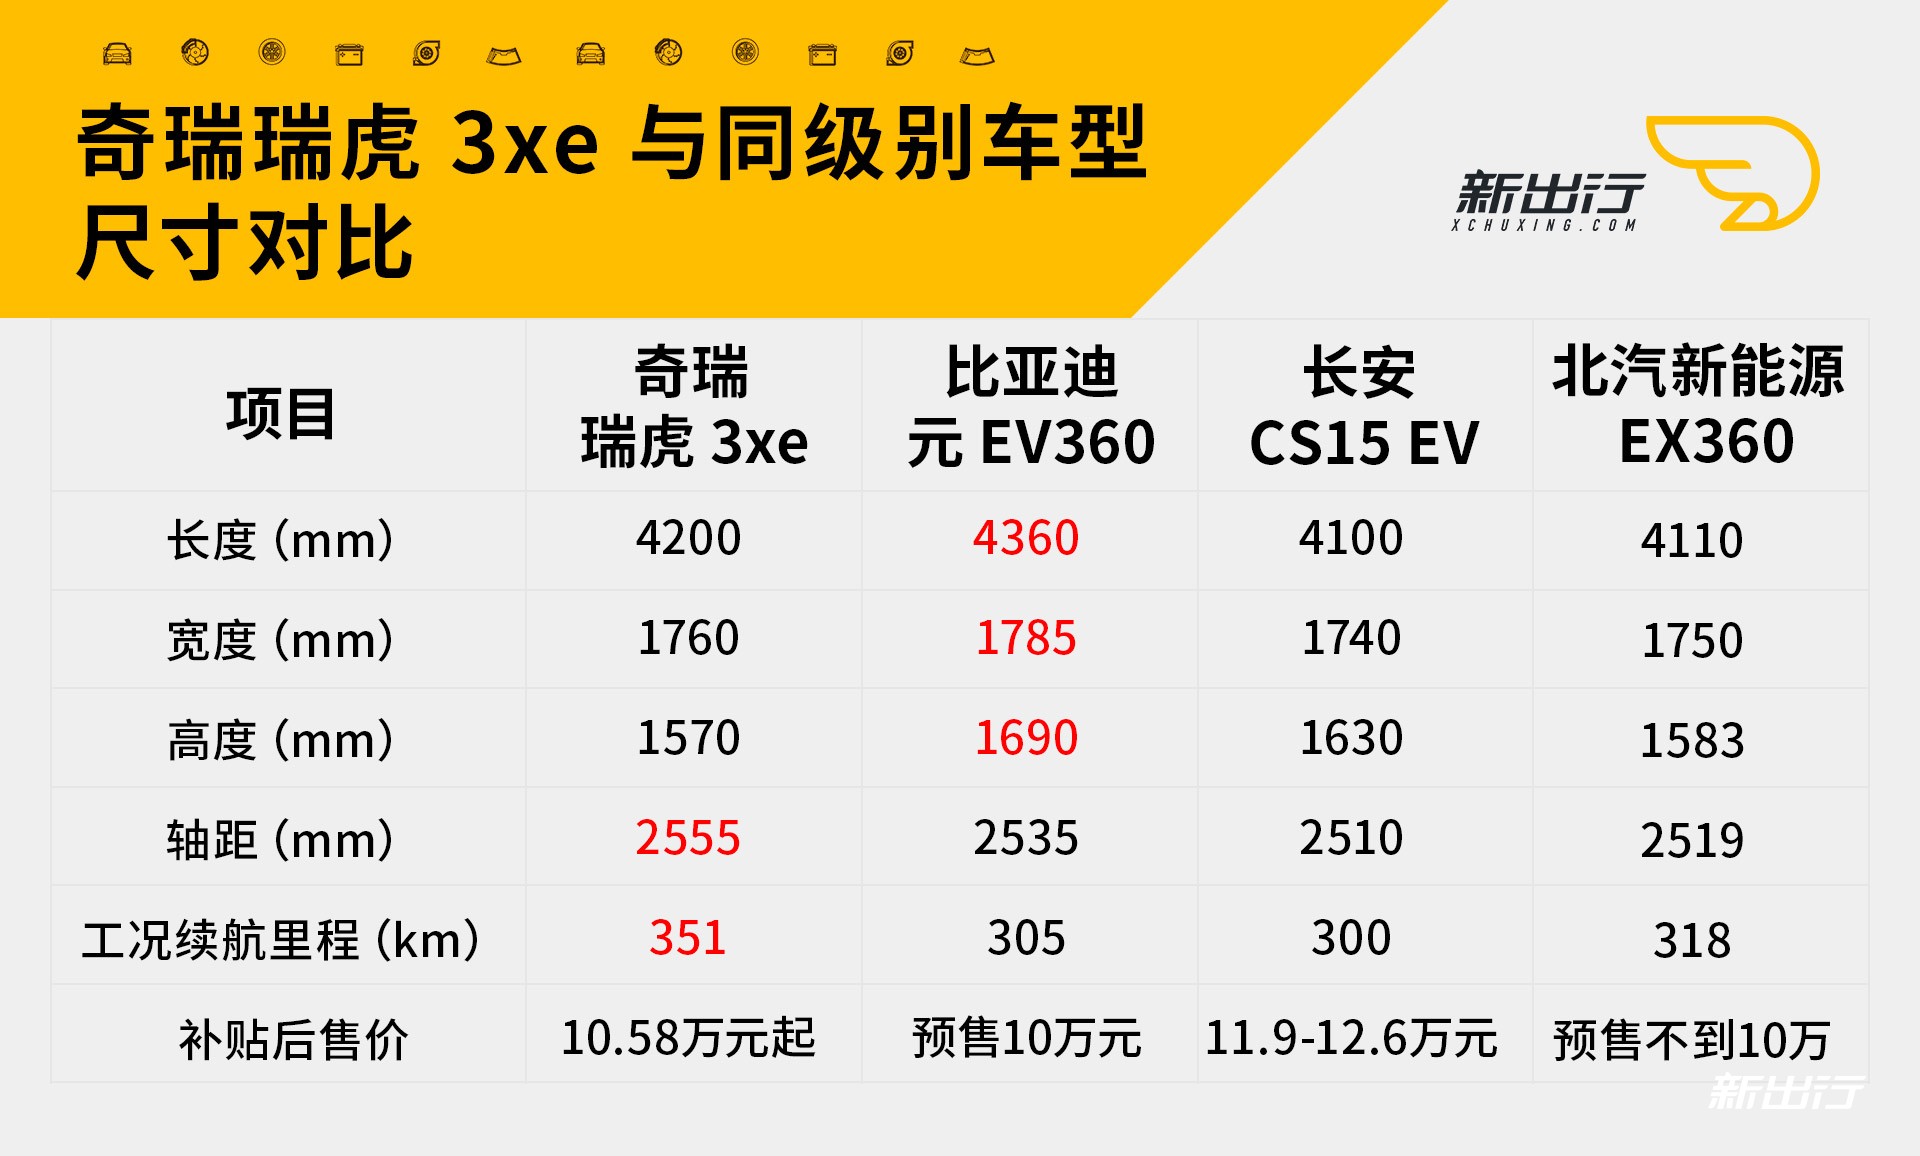 瑞虎3xe等小型纯电SUV参数对比.jpg